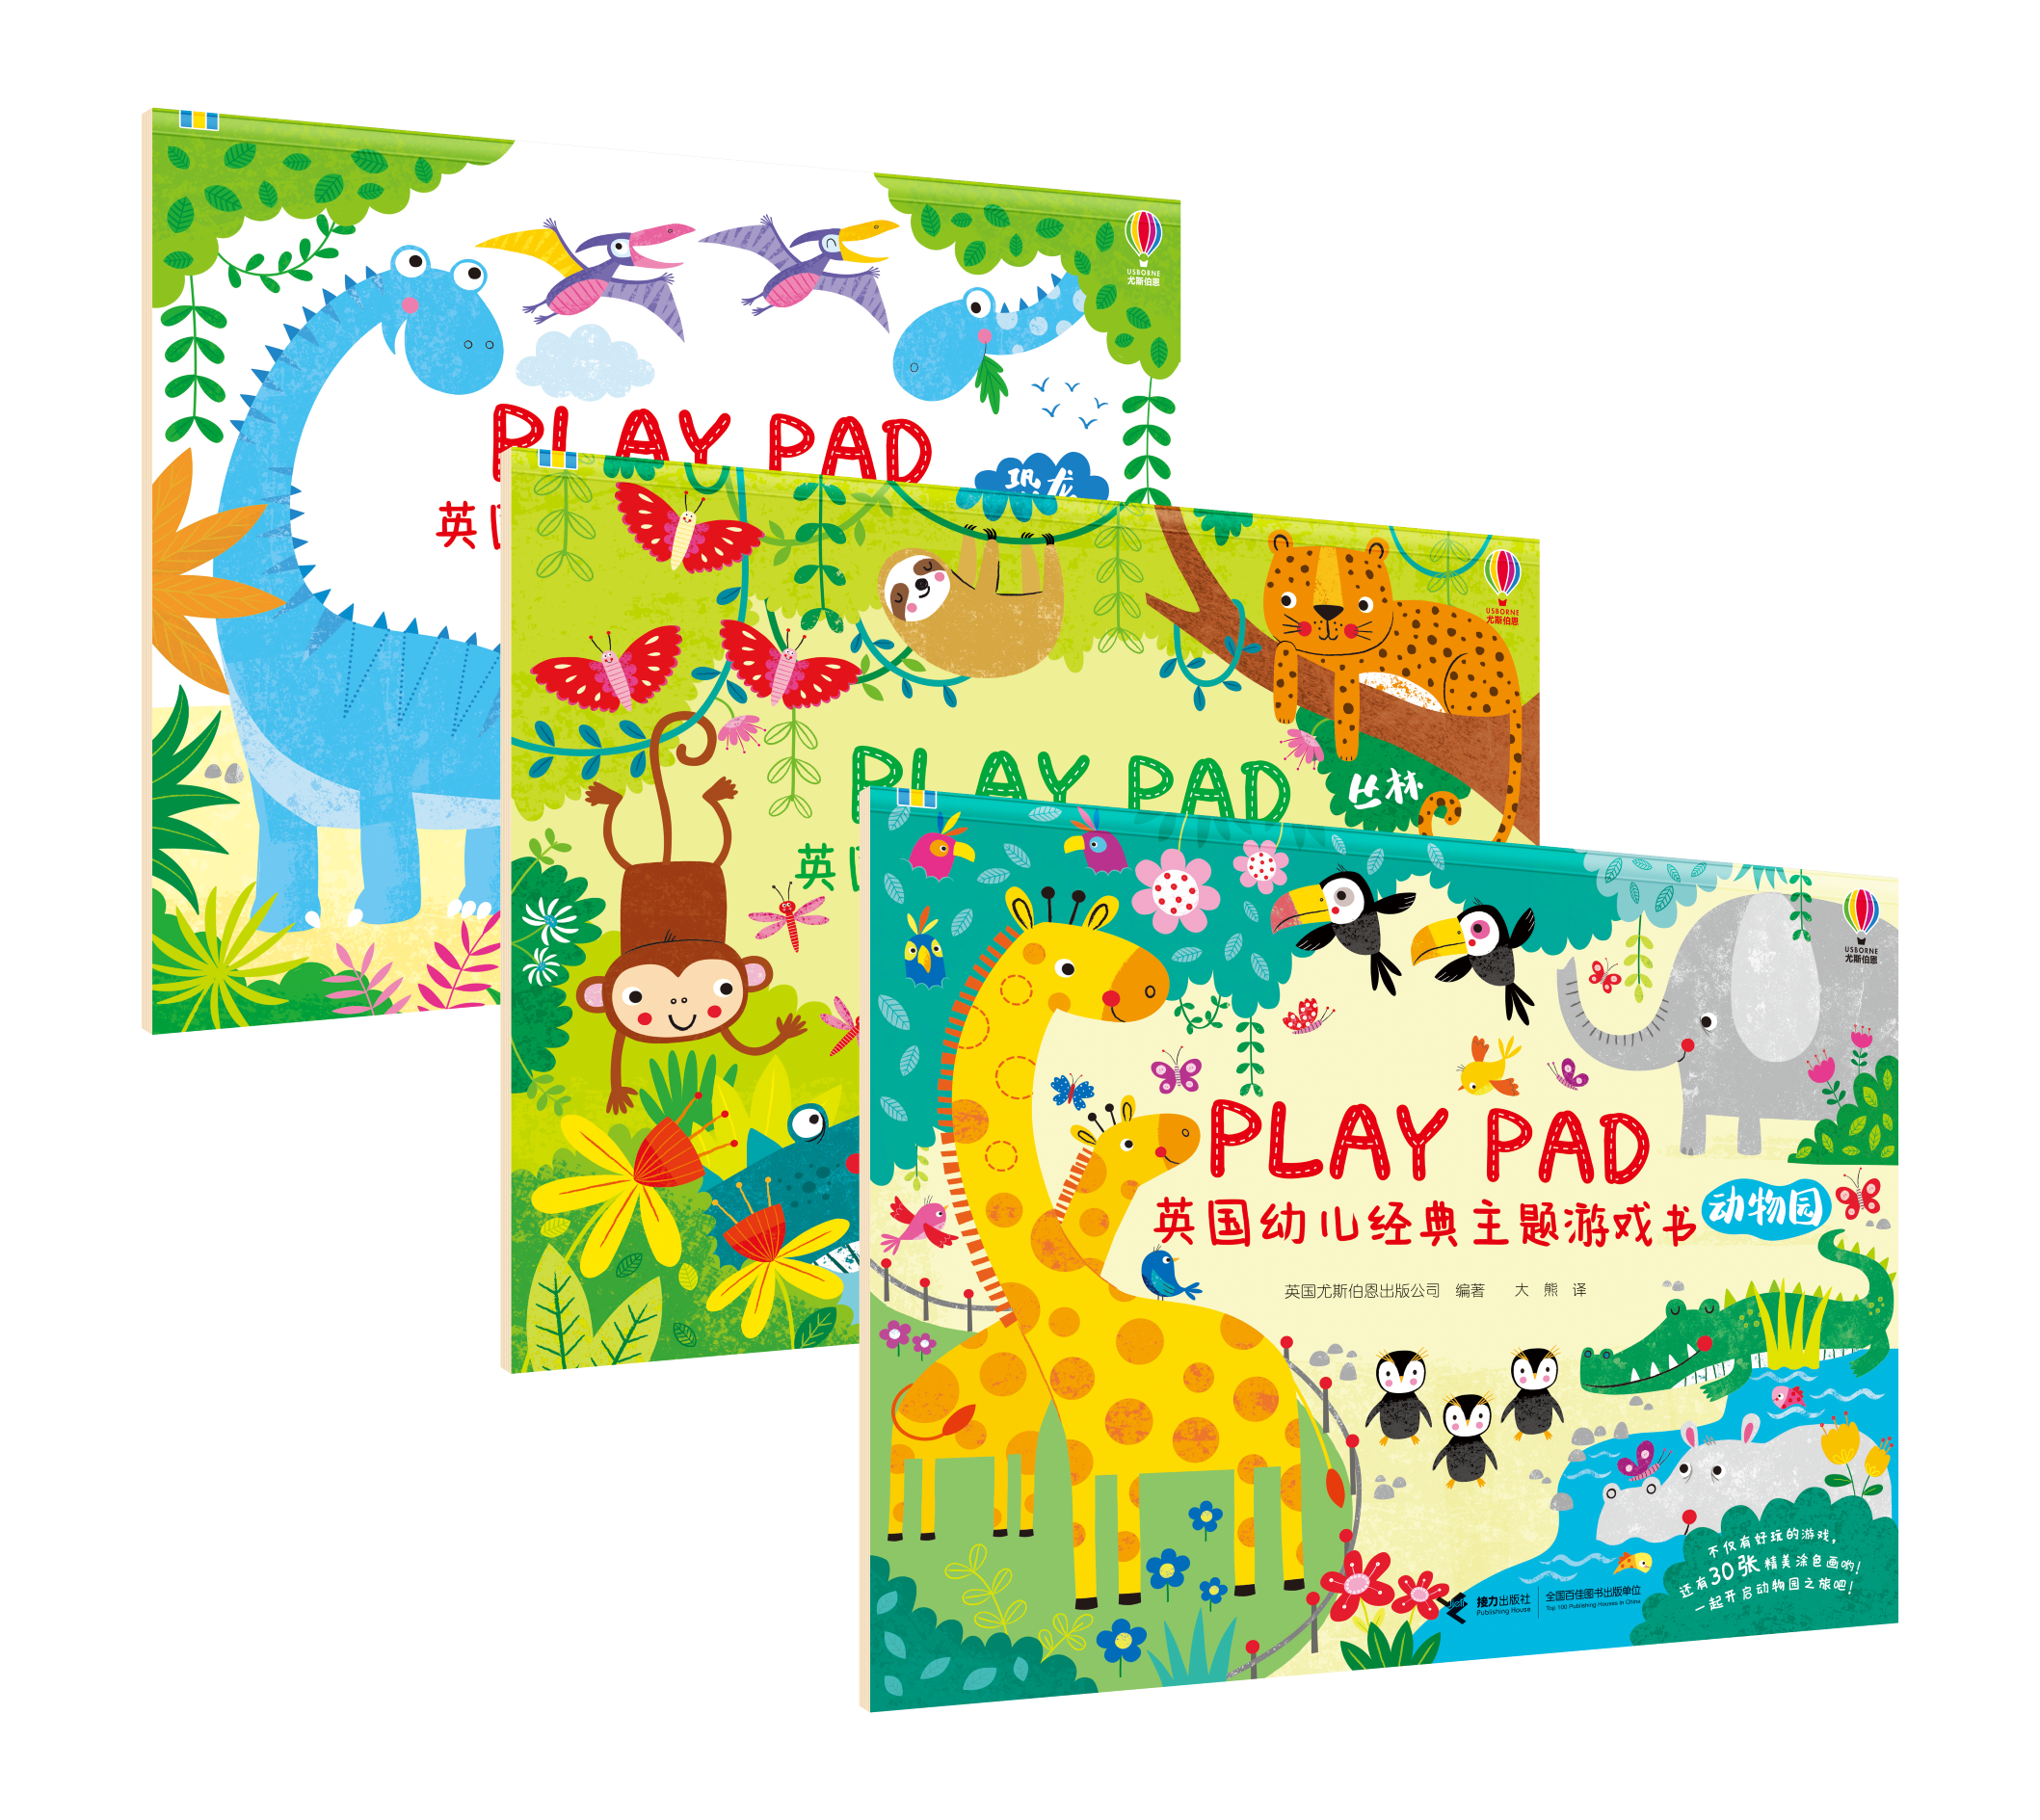 《Play pad百变游戏书》专为2-6岁儿童精心设计的综合益智游戏书。每册都有32个游戏场景，包含10种游戏形式，让孩子在欢乐游戏的过程中，增加了思考，动手的过程，多方面锻炼细致观察力和手眼协调能力，提高了专注力，想象力，创造力，空间感受力和逻辑思维能力。附有场景涂色还能培养孩子的色彩运用和配色方面的艺术审美能力。  